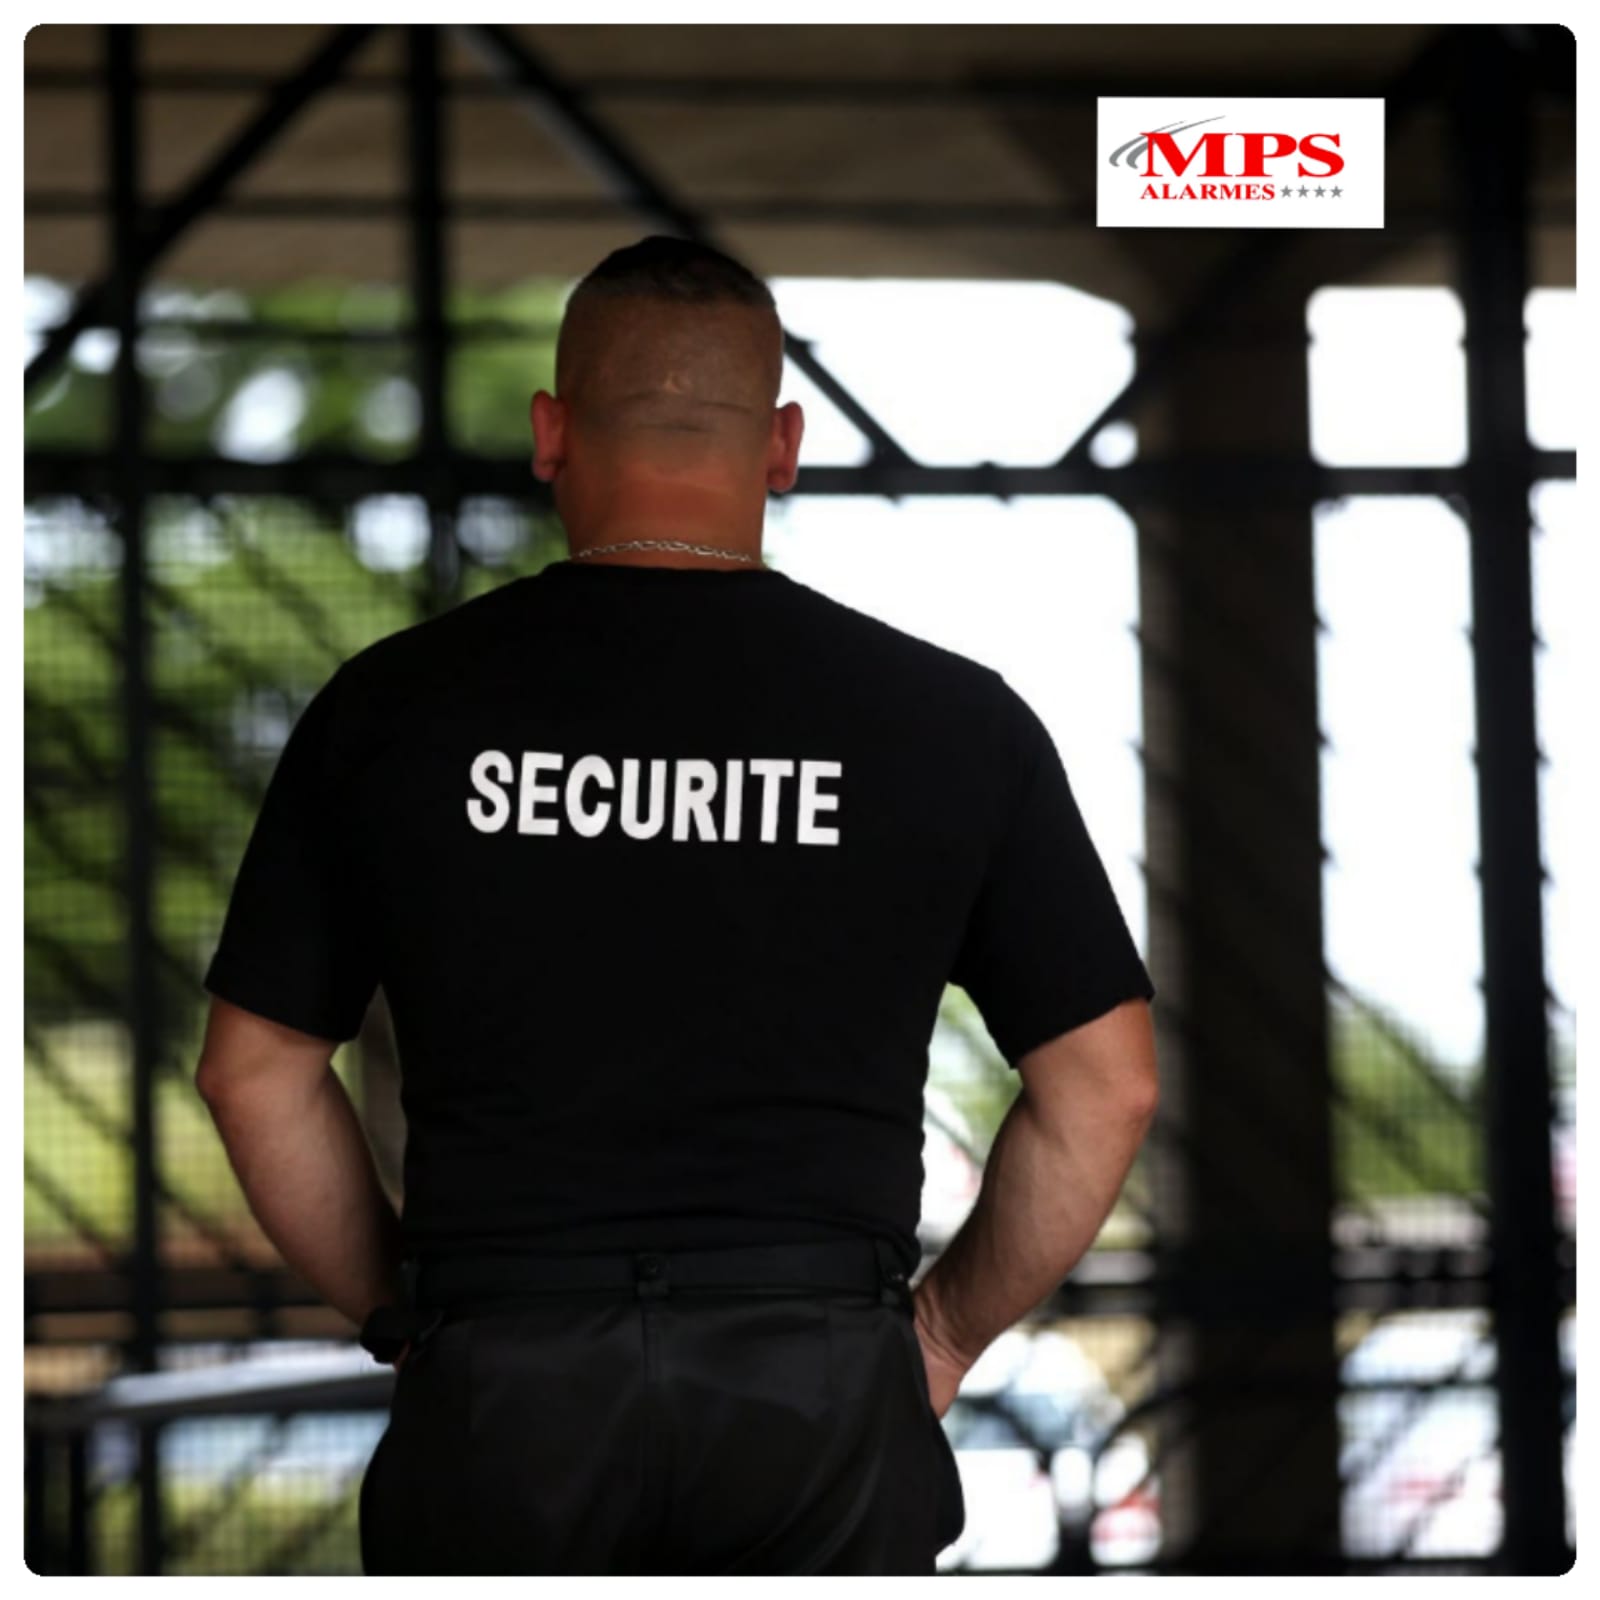 Contactez MPS, votre entreprise de sécurité près de Belfort Montbéliard